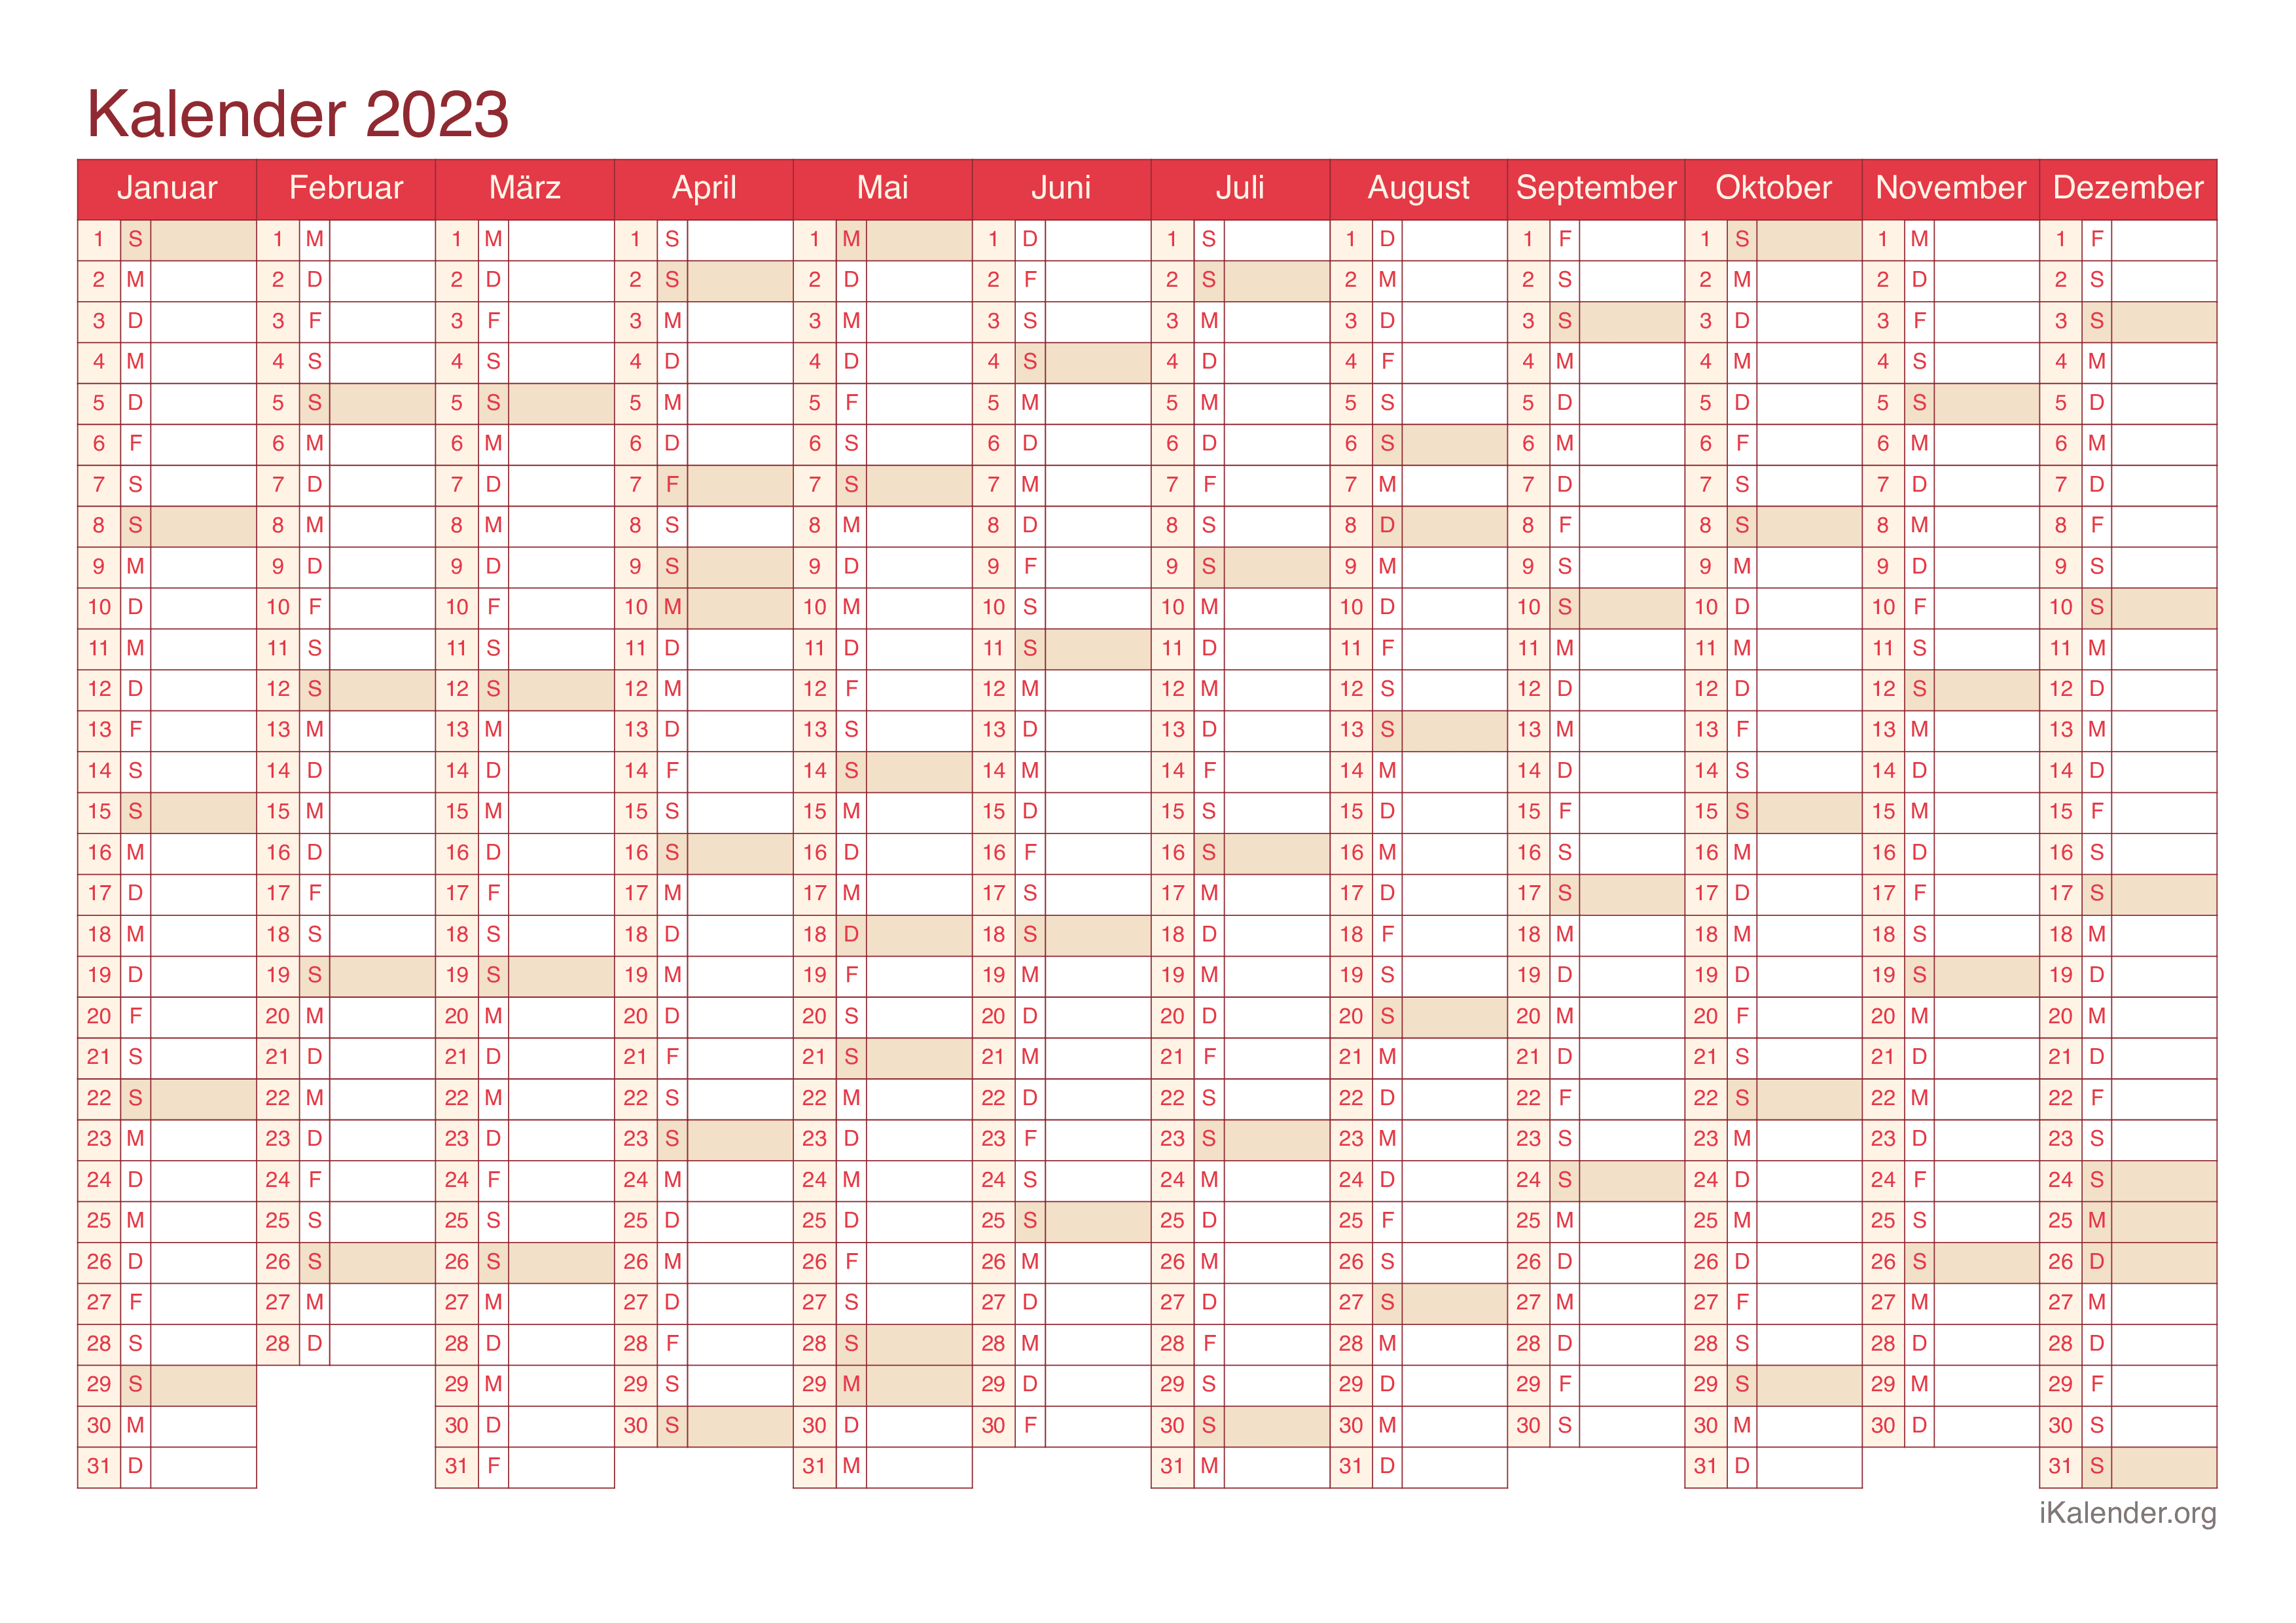 Jahreskalender 2023 - Cherry